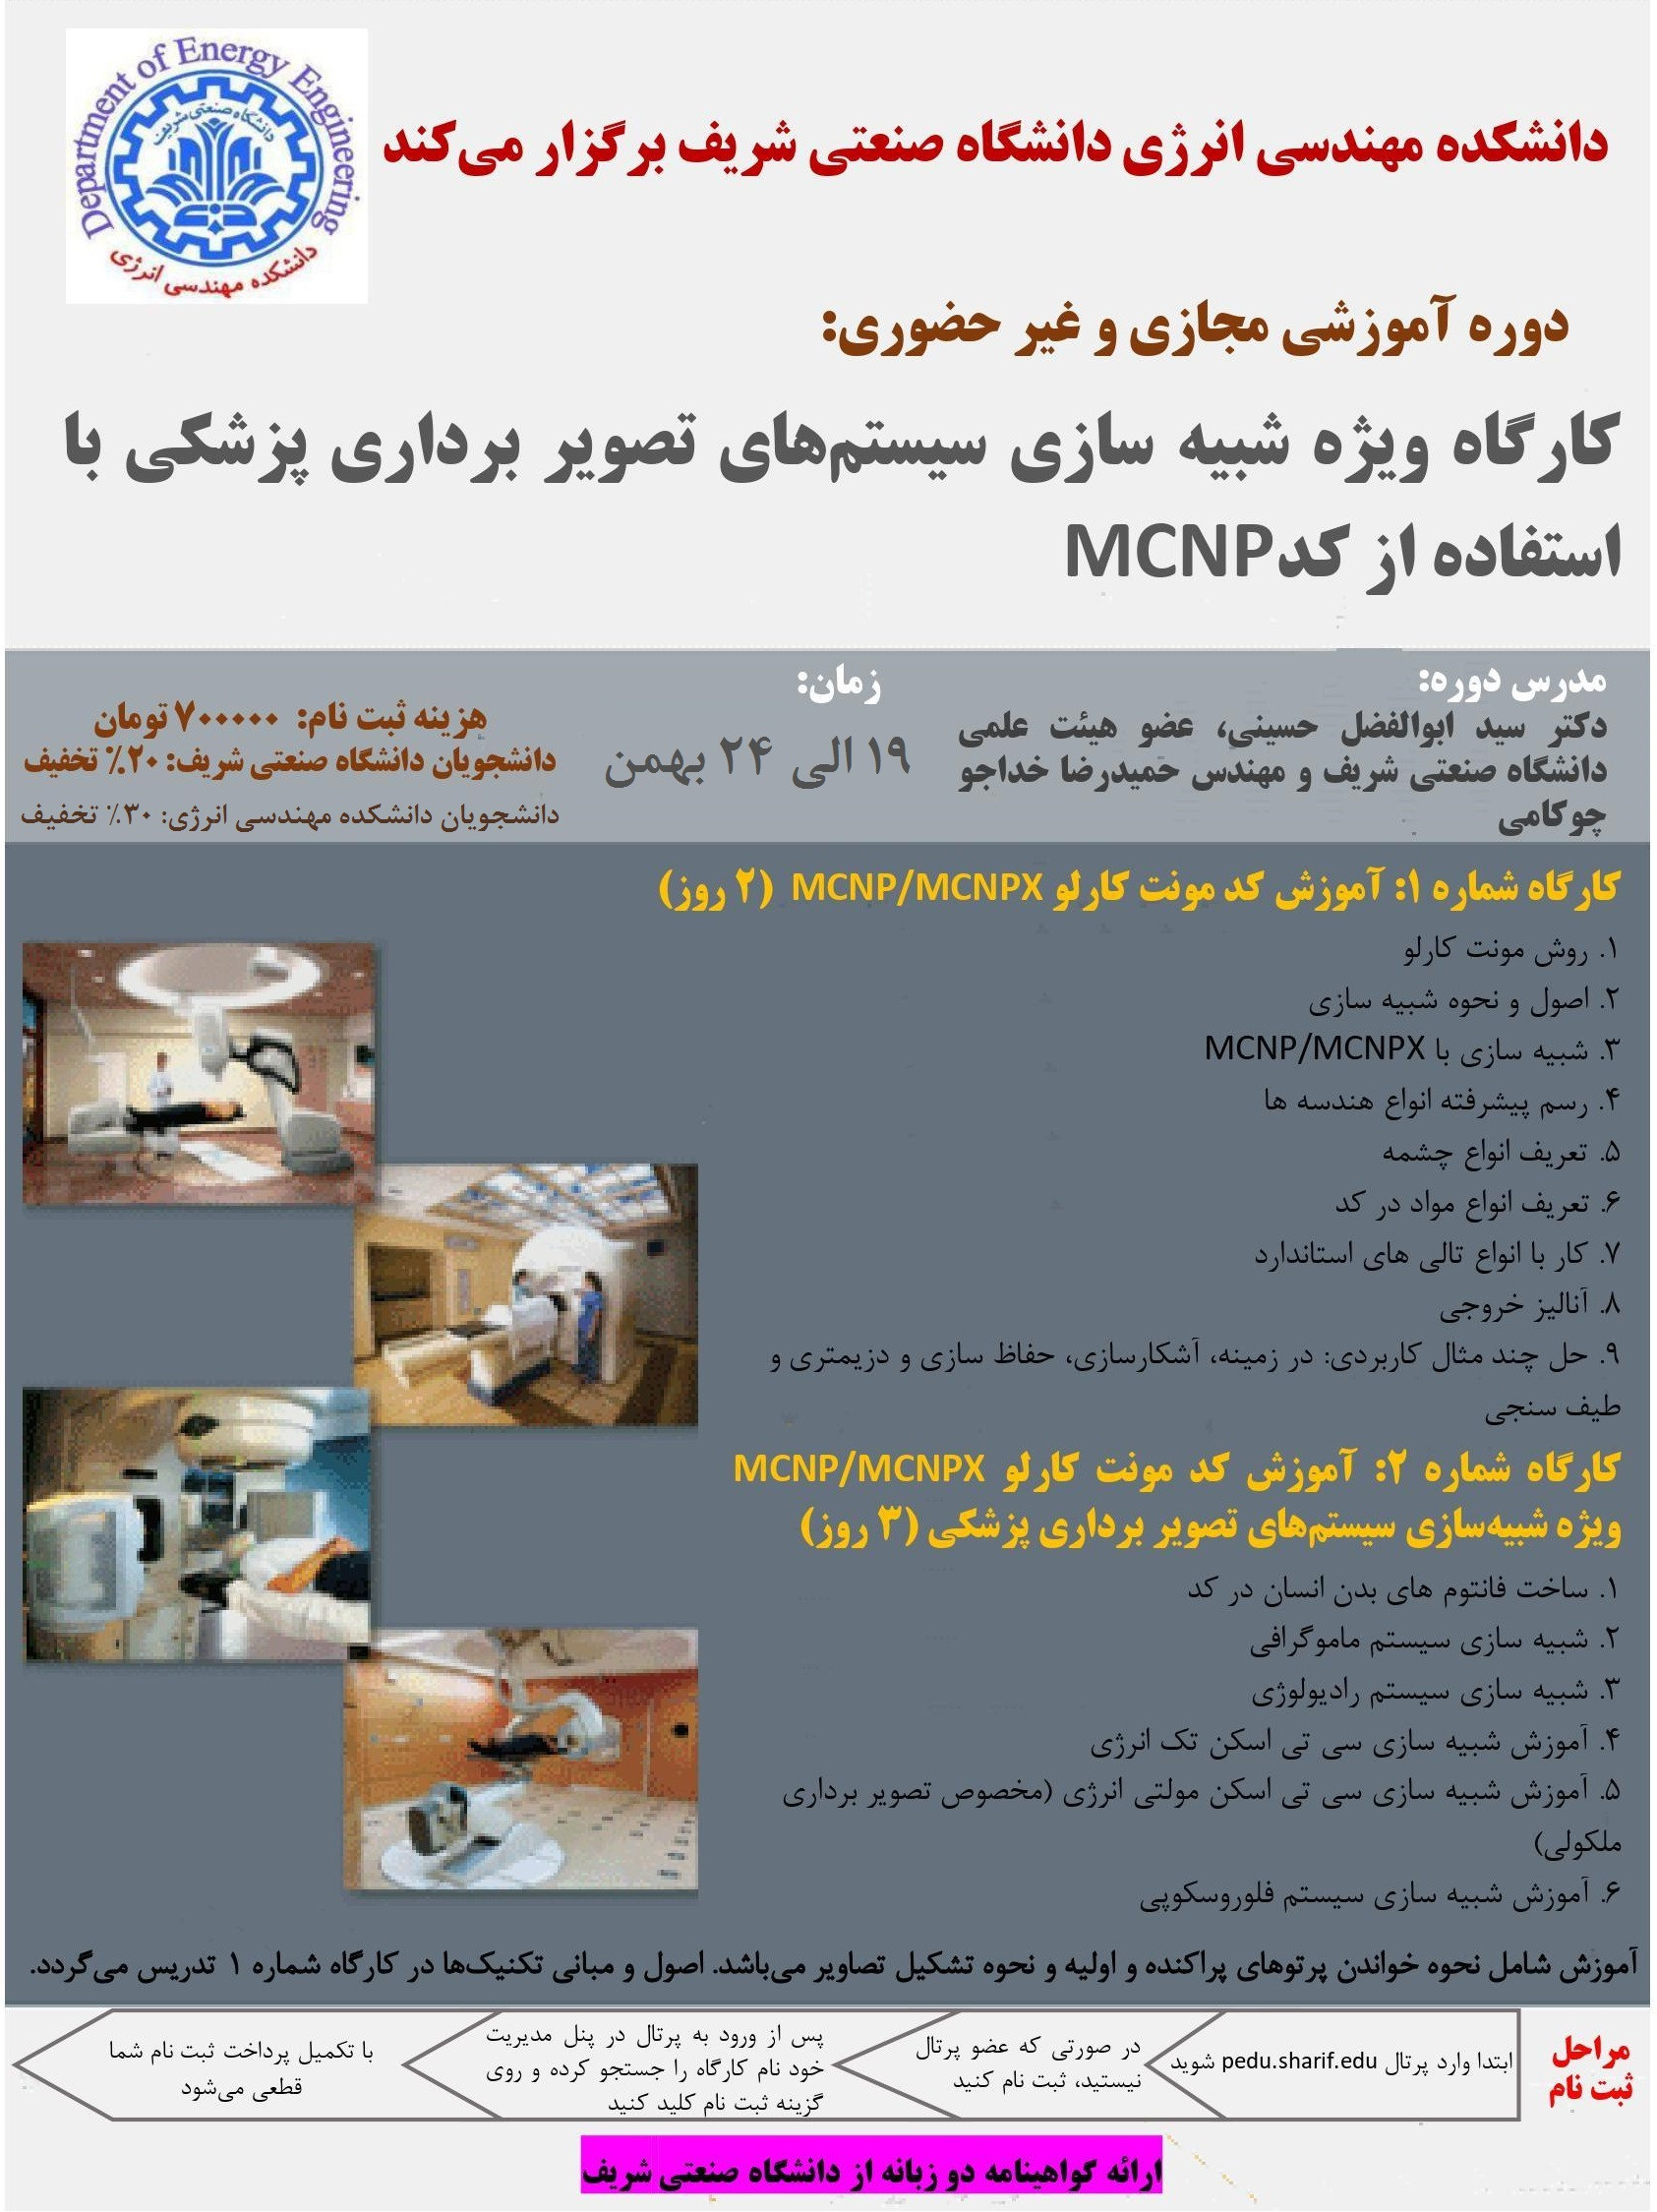 کارگاه ویژه شبیه سازی سیستم های تصویربرداری پزشکی با استفاده از کد MCNPX پوستر رویداد 